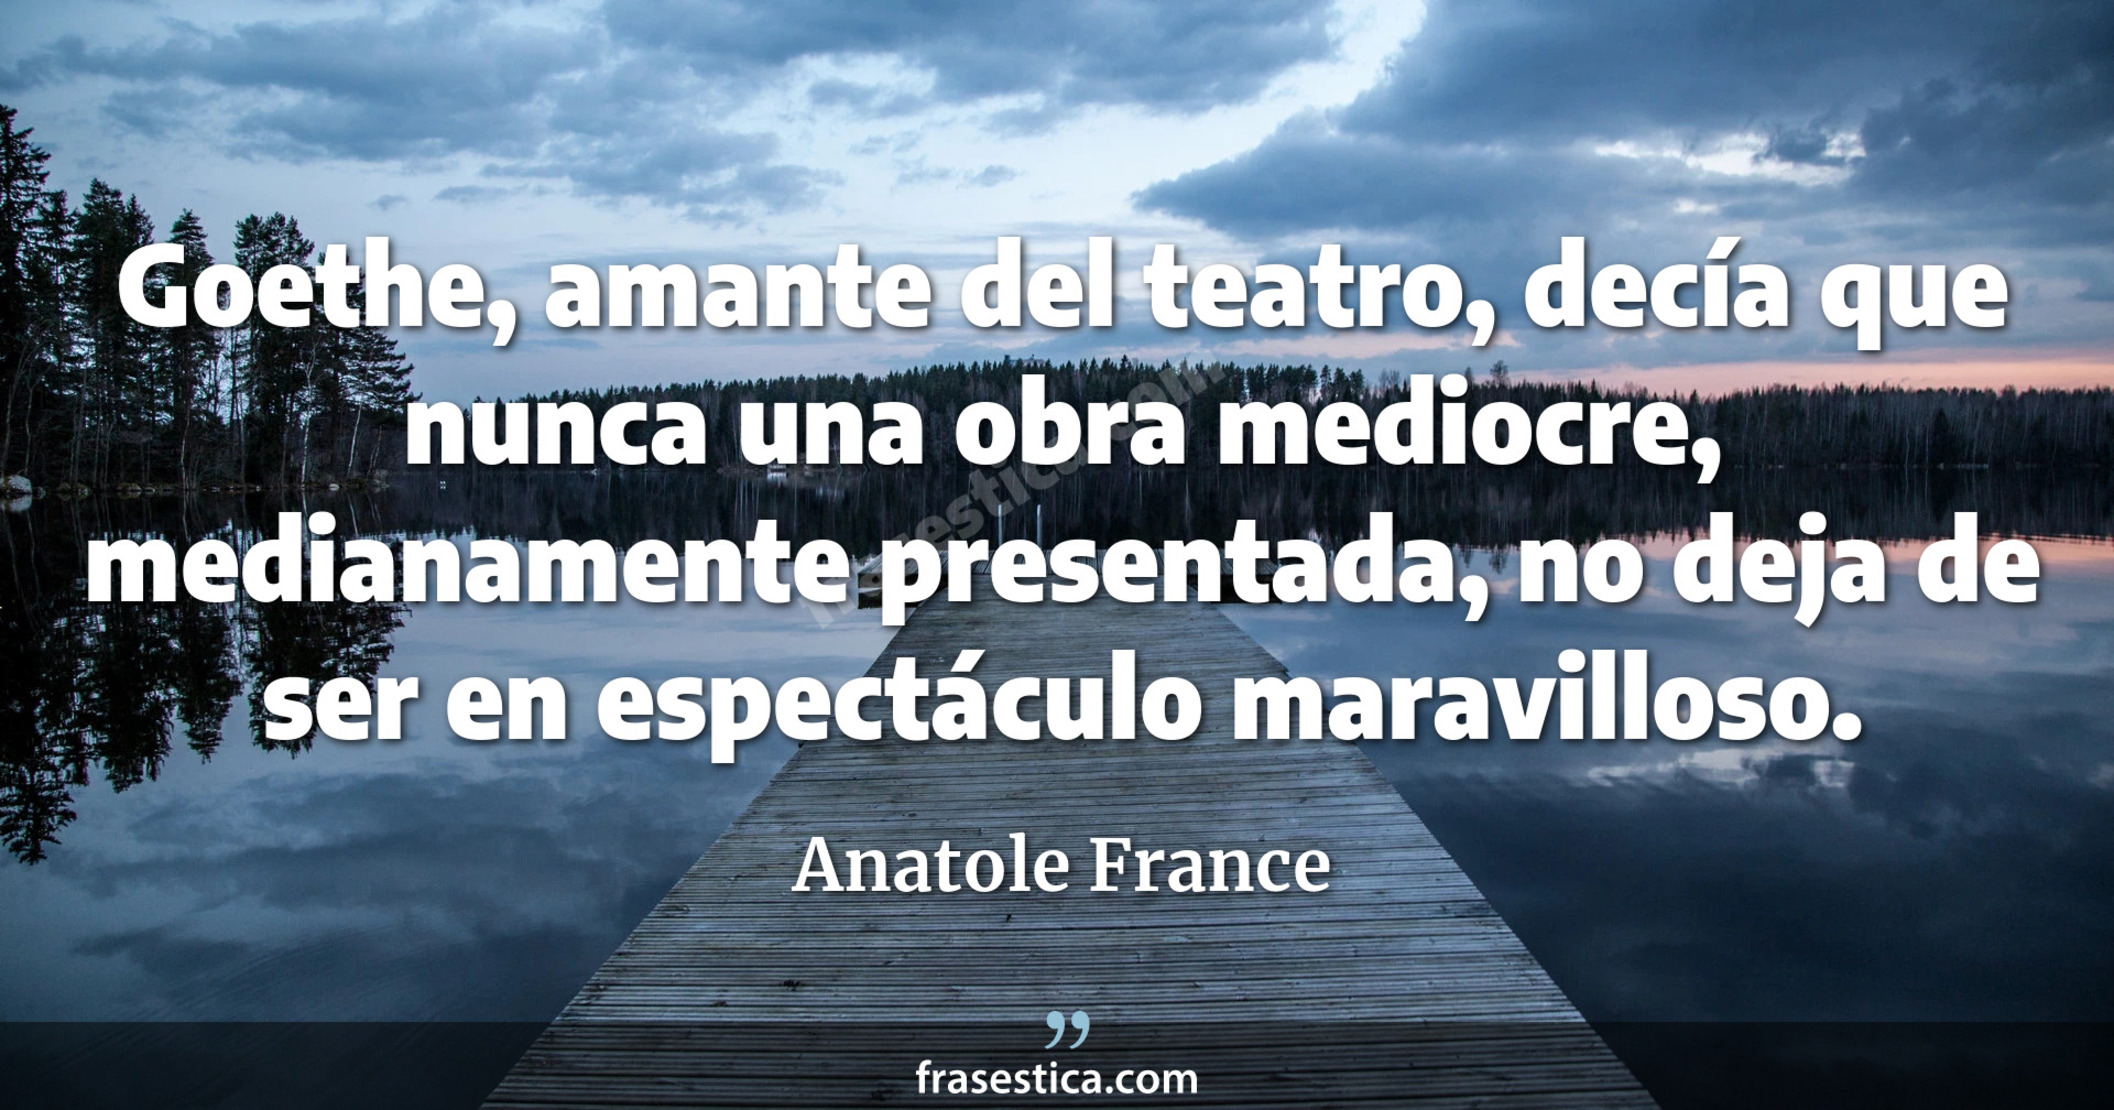 Goethe, amante del teatro, decía que nunca una obra mediocre, medianamente presentada, no deja de ser en espectáculo maravilloso. - Anatole France